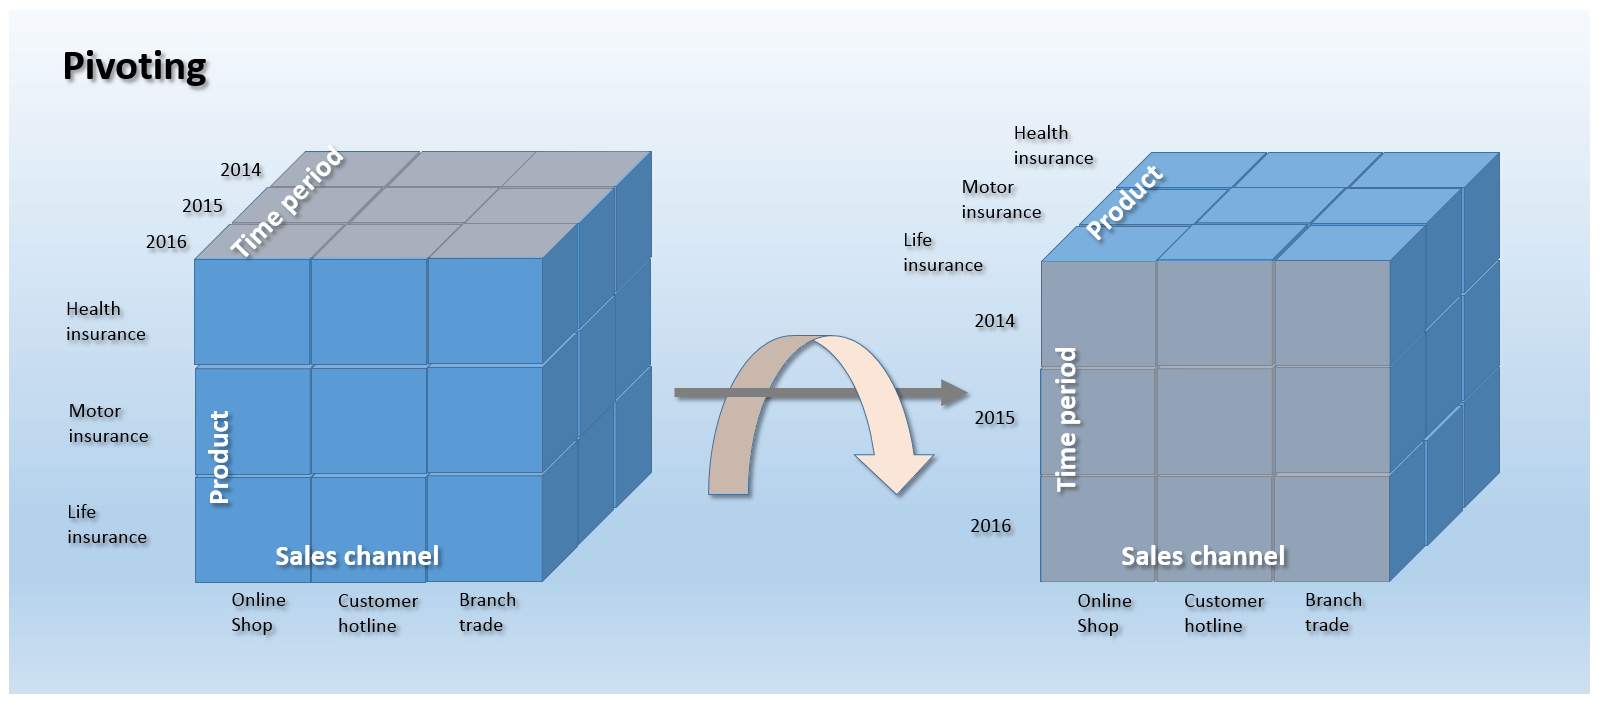 Representación esquemática de una operación de pivoting con el ejemplo de un cubo tridimensional